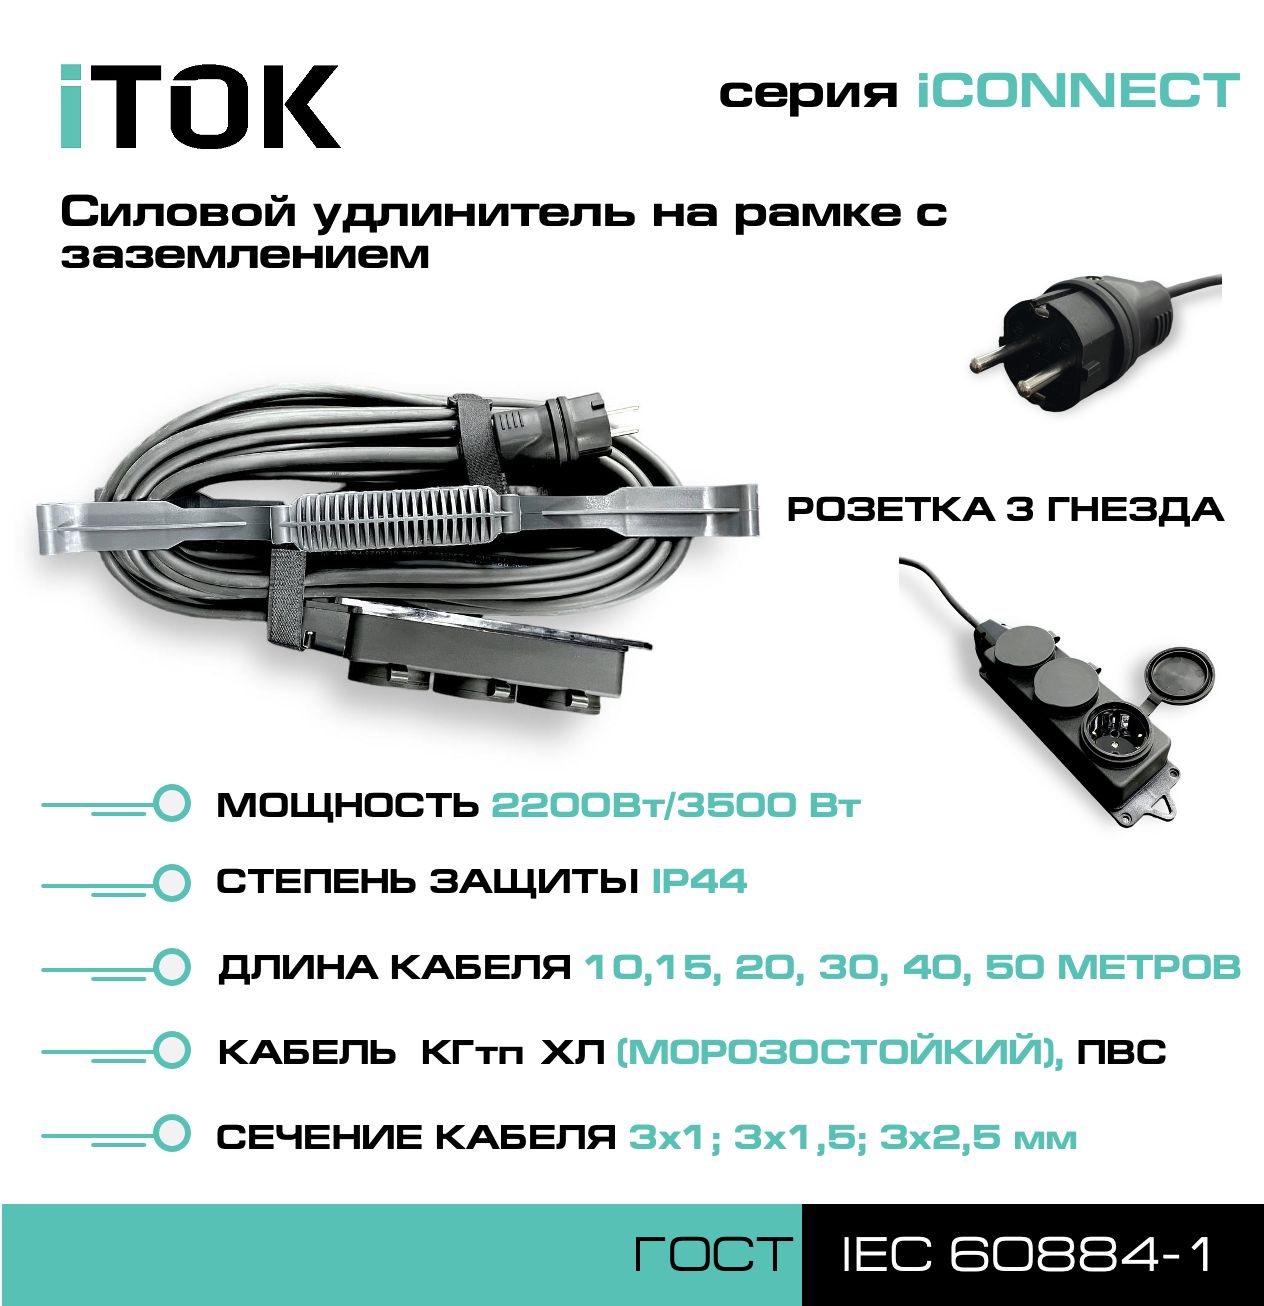 Удлинитель на рамке с заземлением серии iTOK iCONNECT ПВС 3х2,5 мм 3 гнезда IP44 15 м